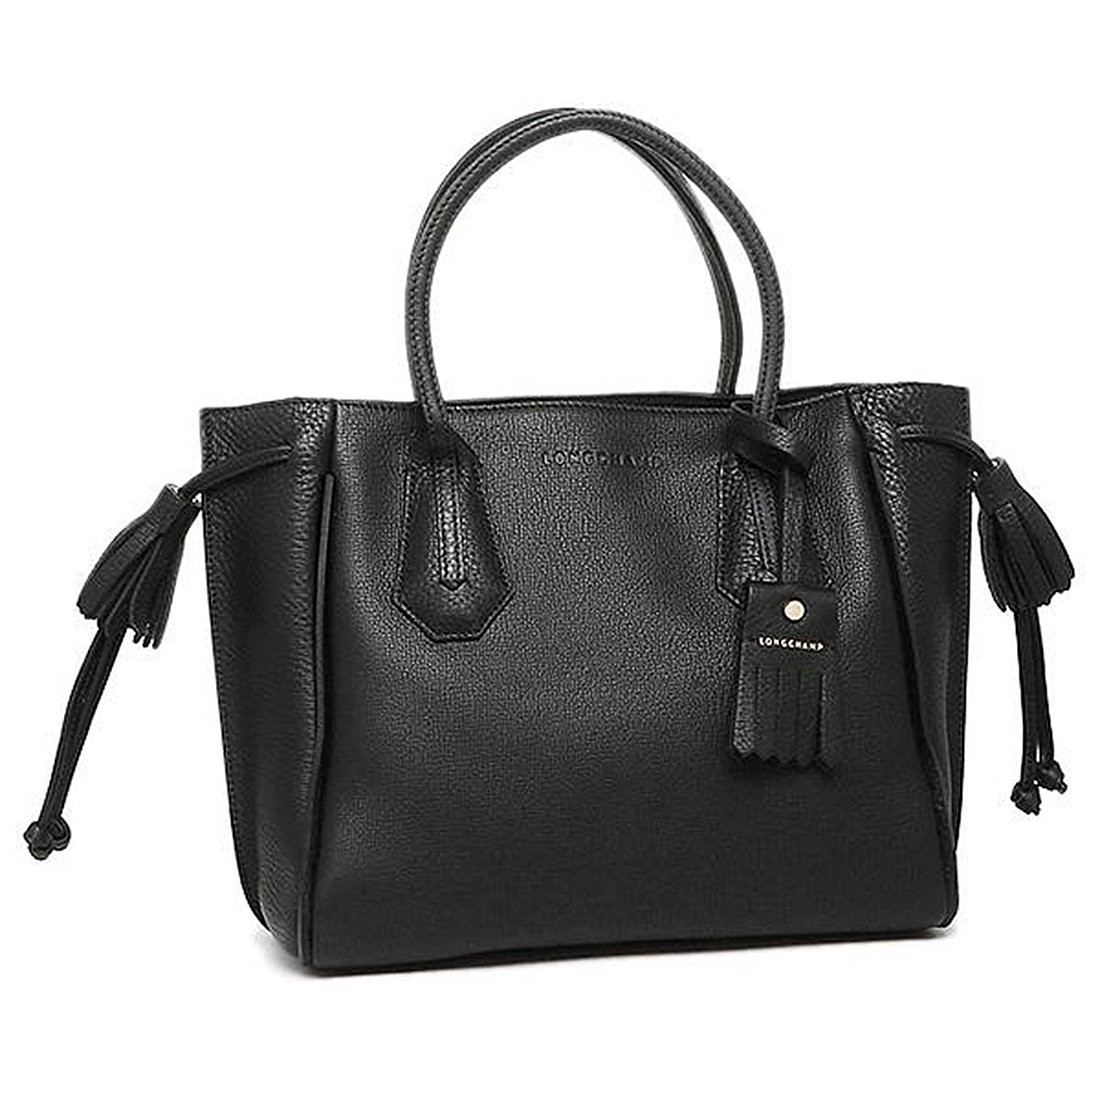 Longchamp Ladies Penelope Black Small Tote Bag L1294843001